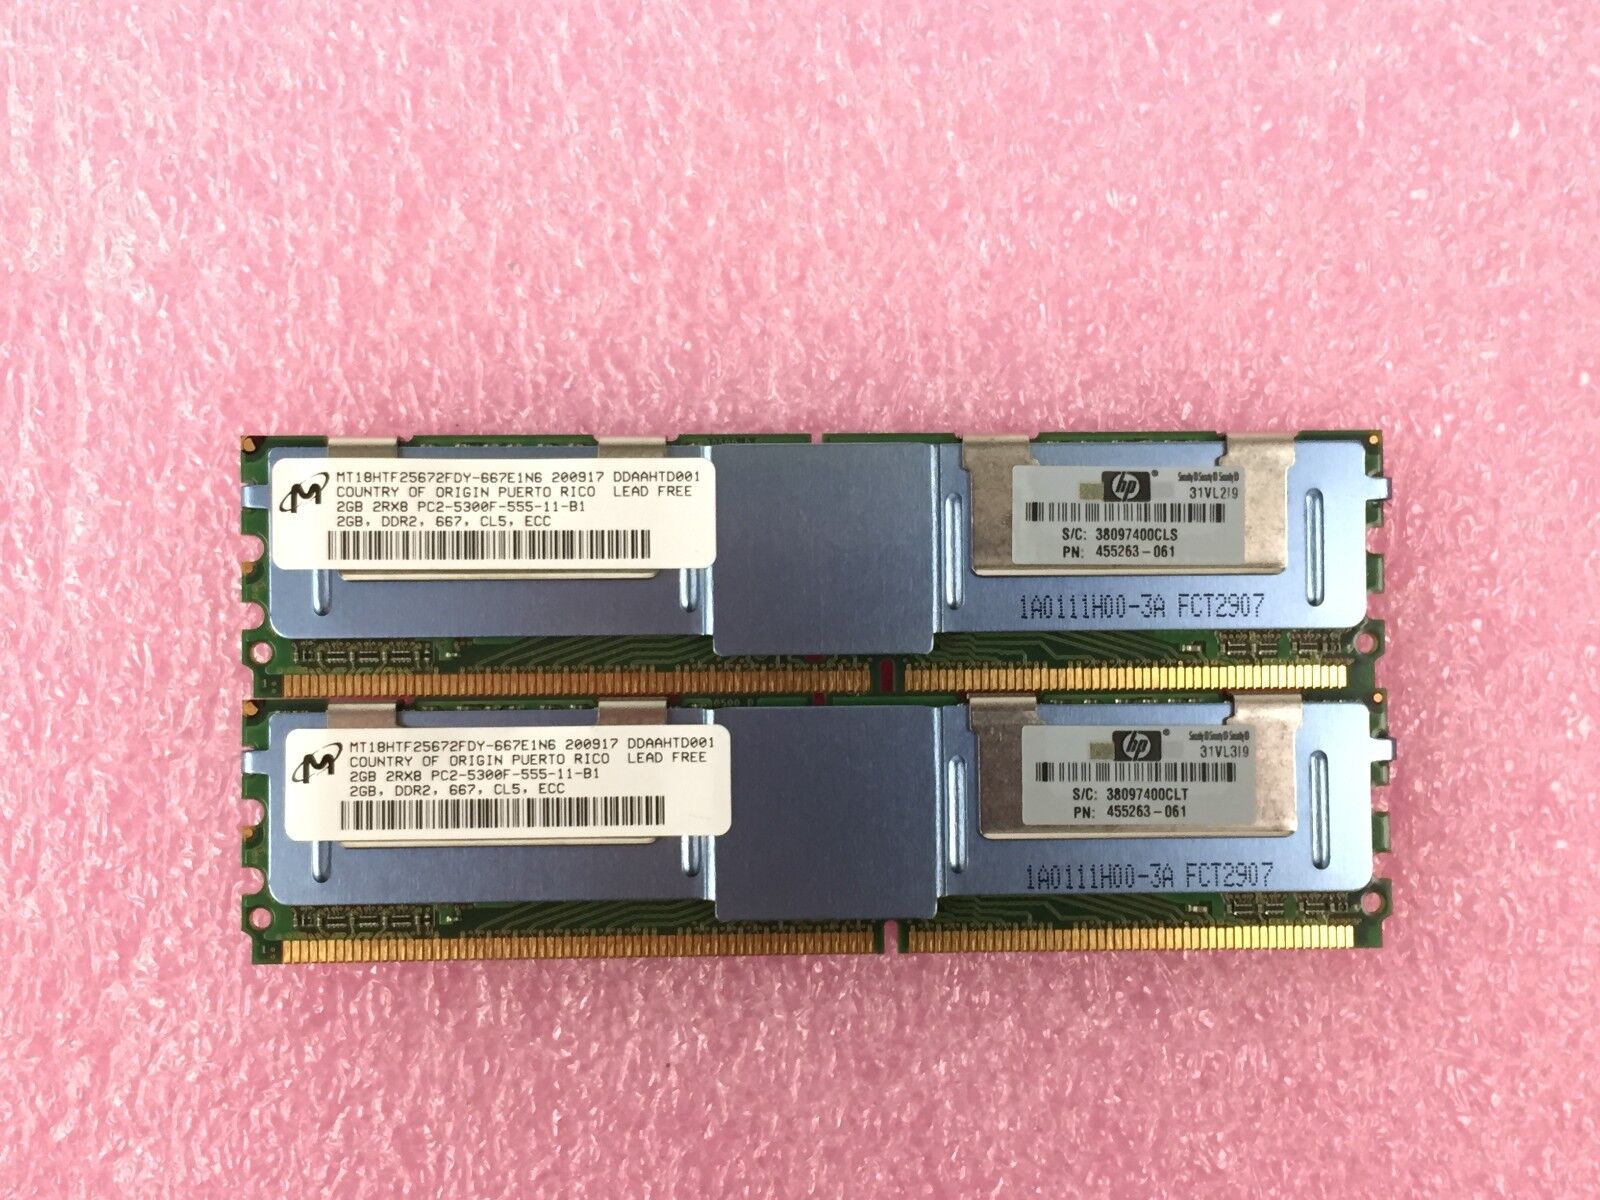 4GB Kit (2x 2GB) Micron MT18HTF25672FDY-667E1N6 2RX8 PC2-5300F-555-11-B1